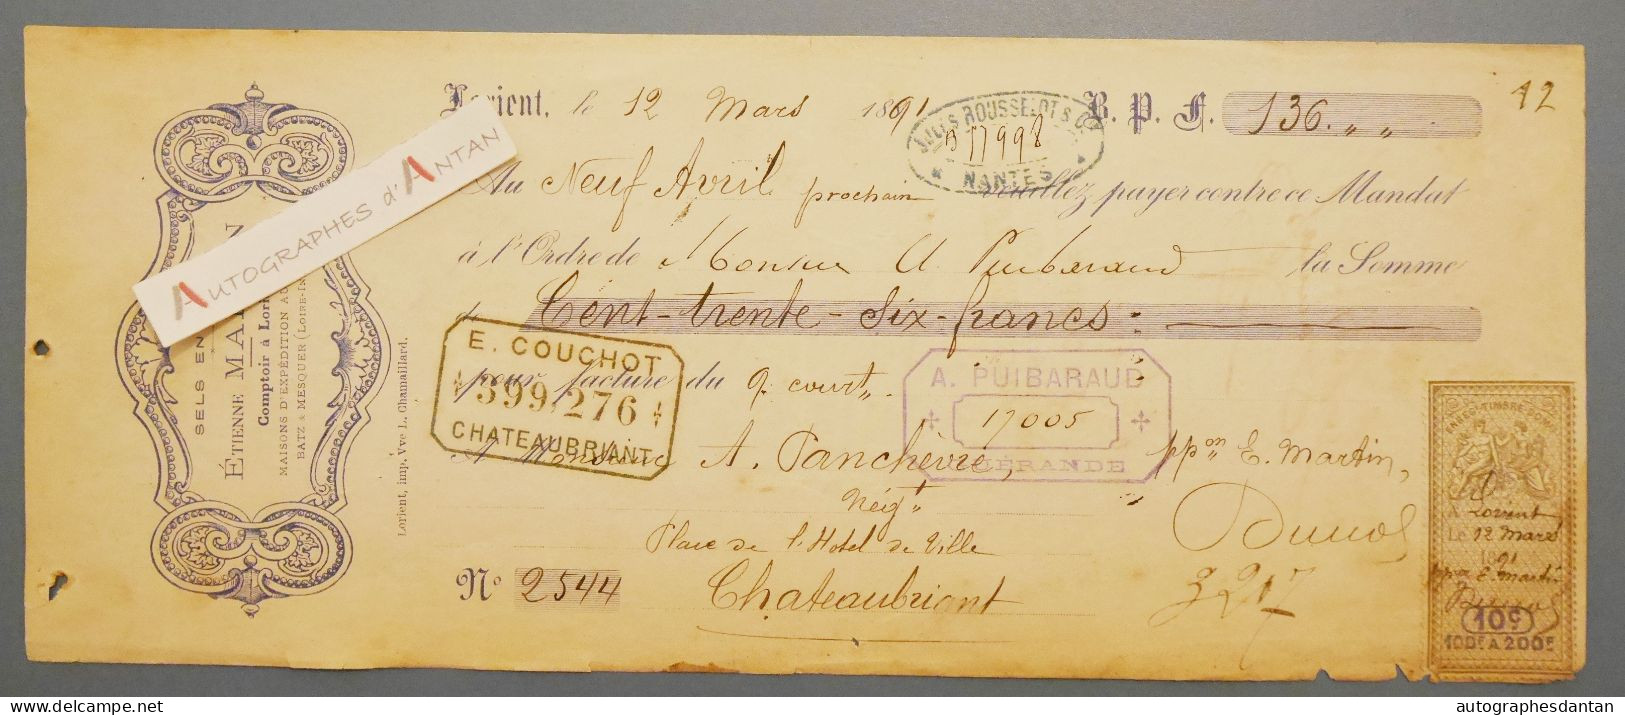 ● Lorient 1891 Etienne MARTIN Sels En Gros - Panchevre Négociant à Chateaubriant - Rare Mandat Lettre De Change - Wechsel